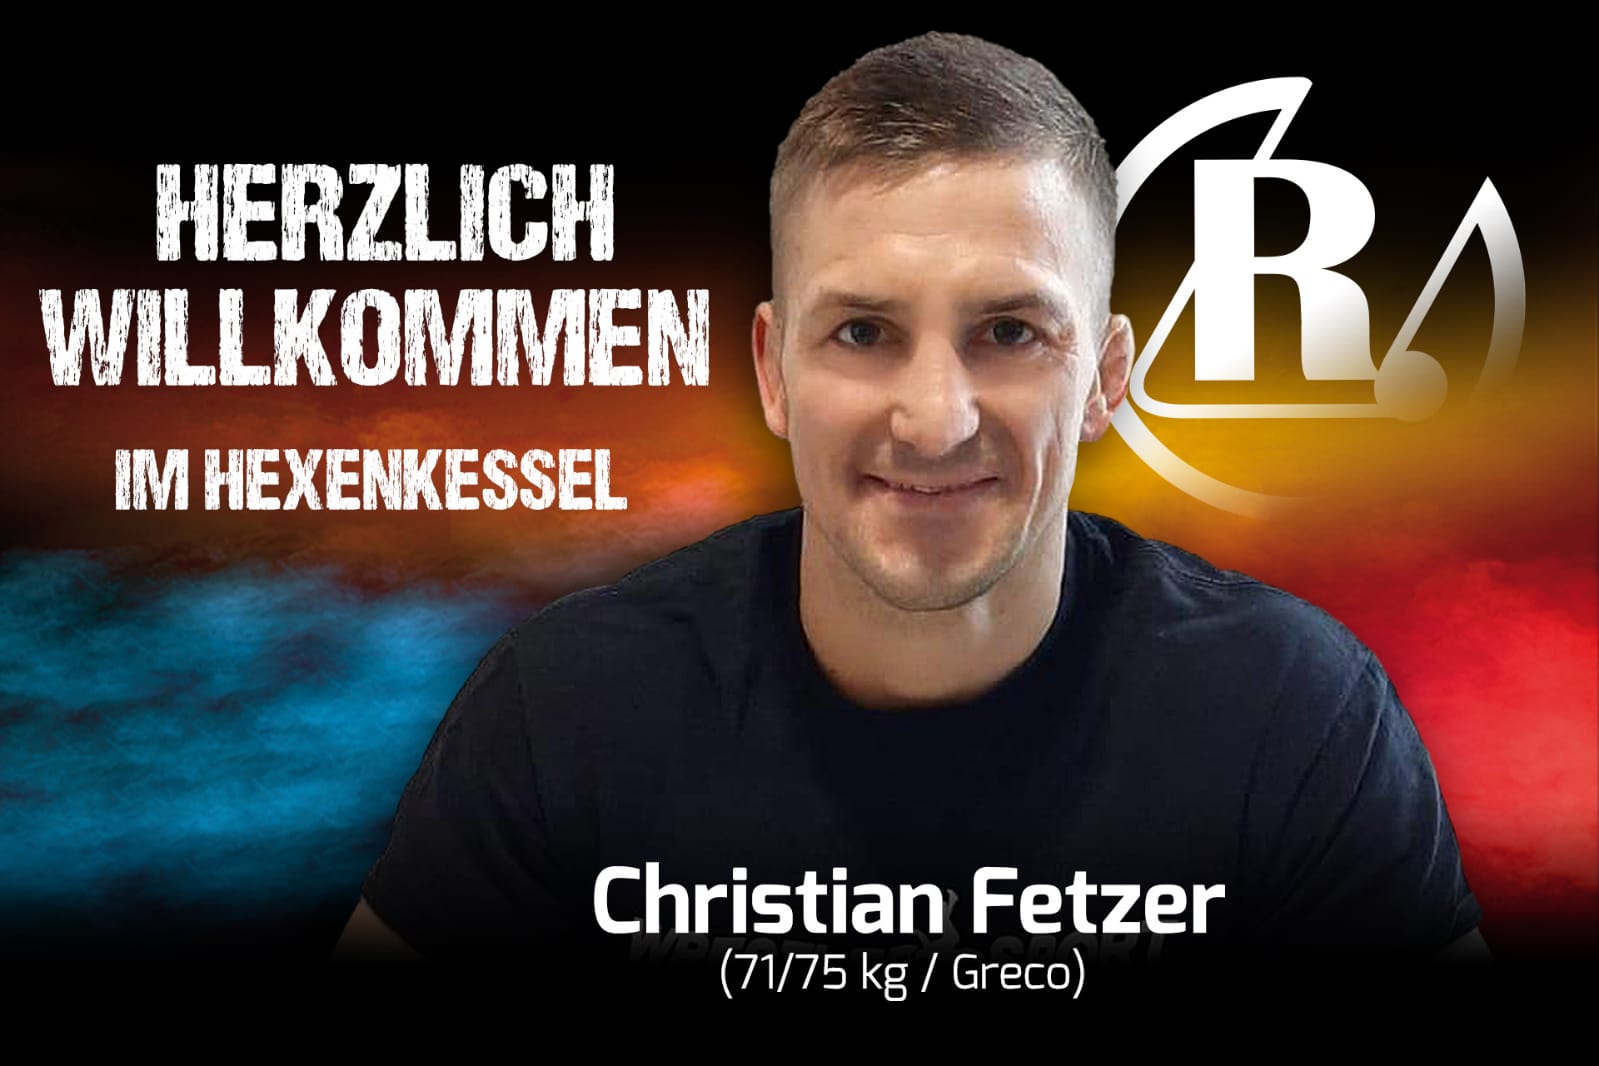 Christian Fetzer